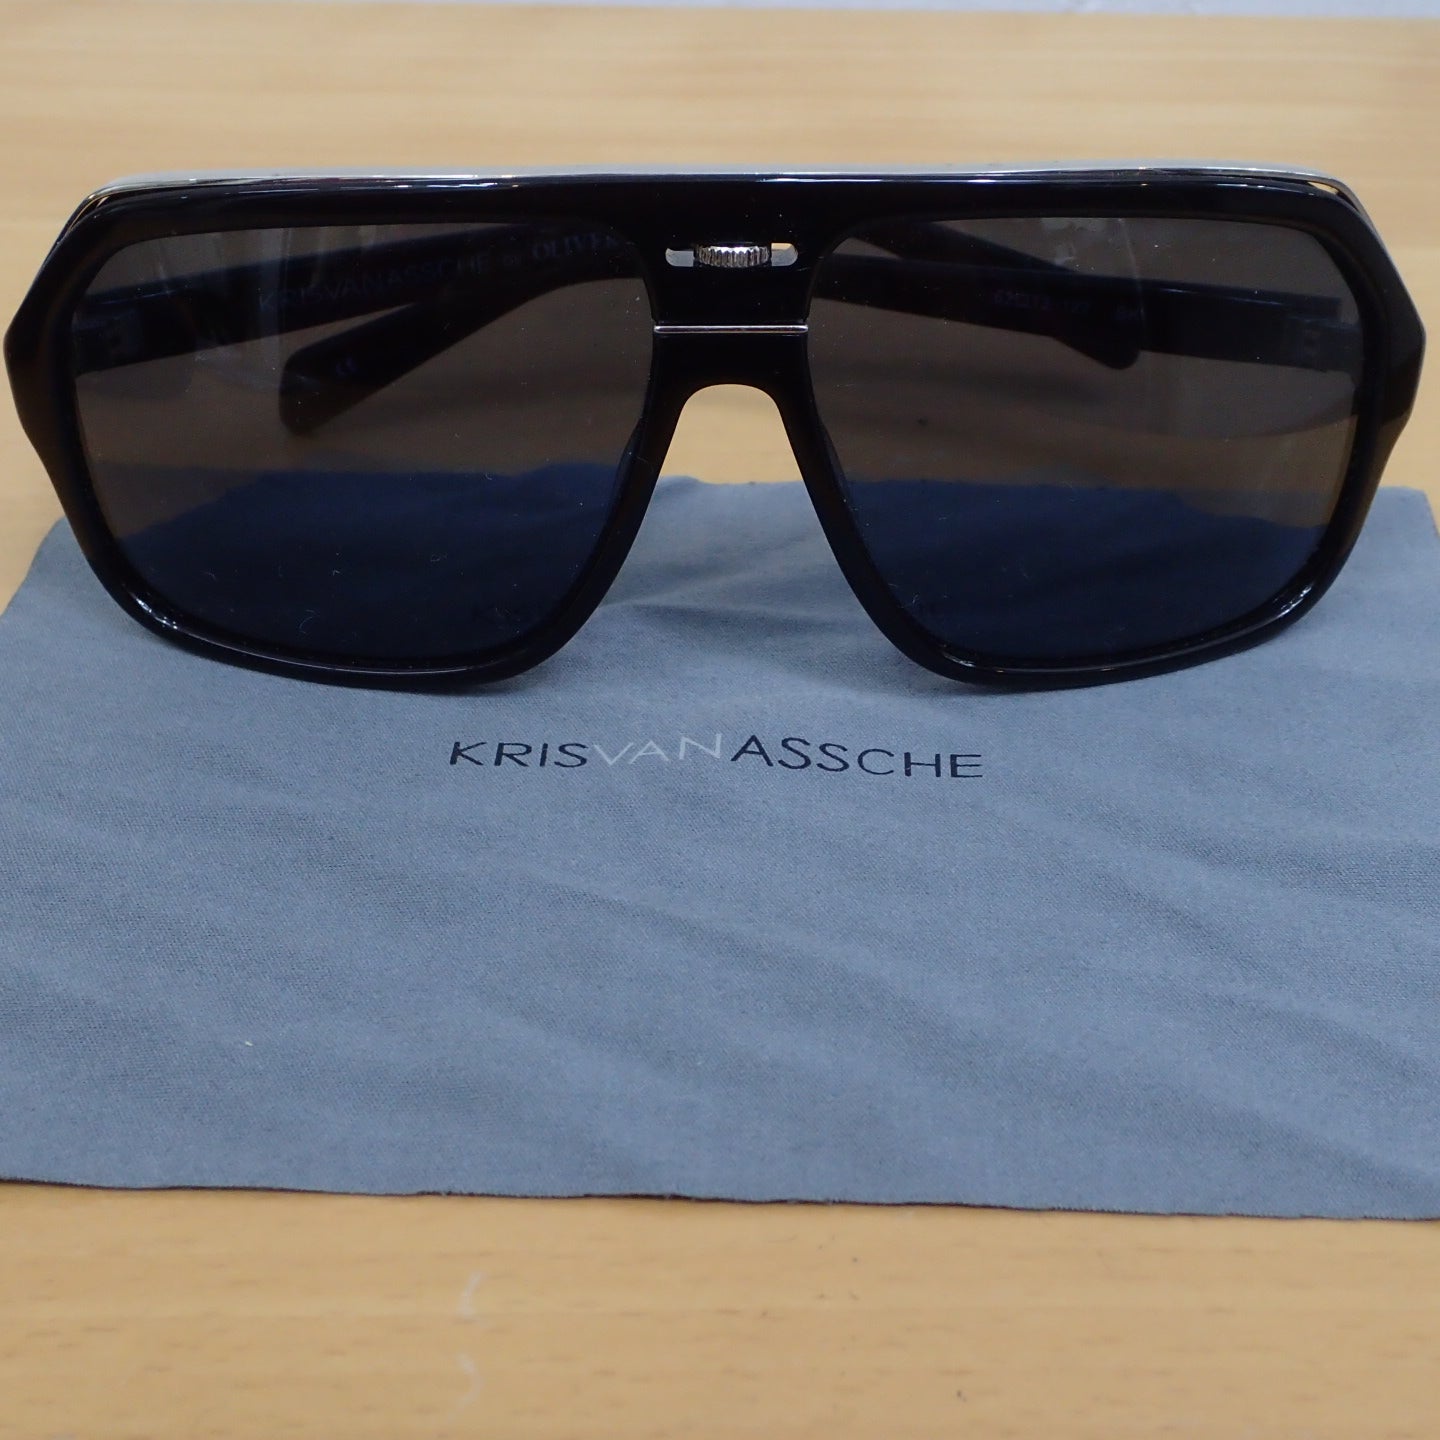 Kris Van Assche by OLIVER PEOPLES Sunglasses